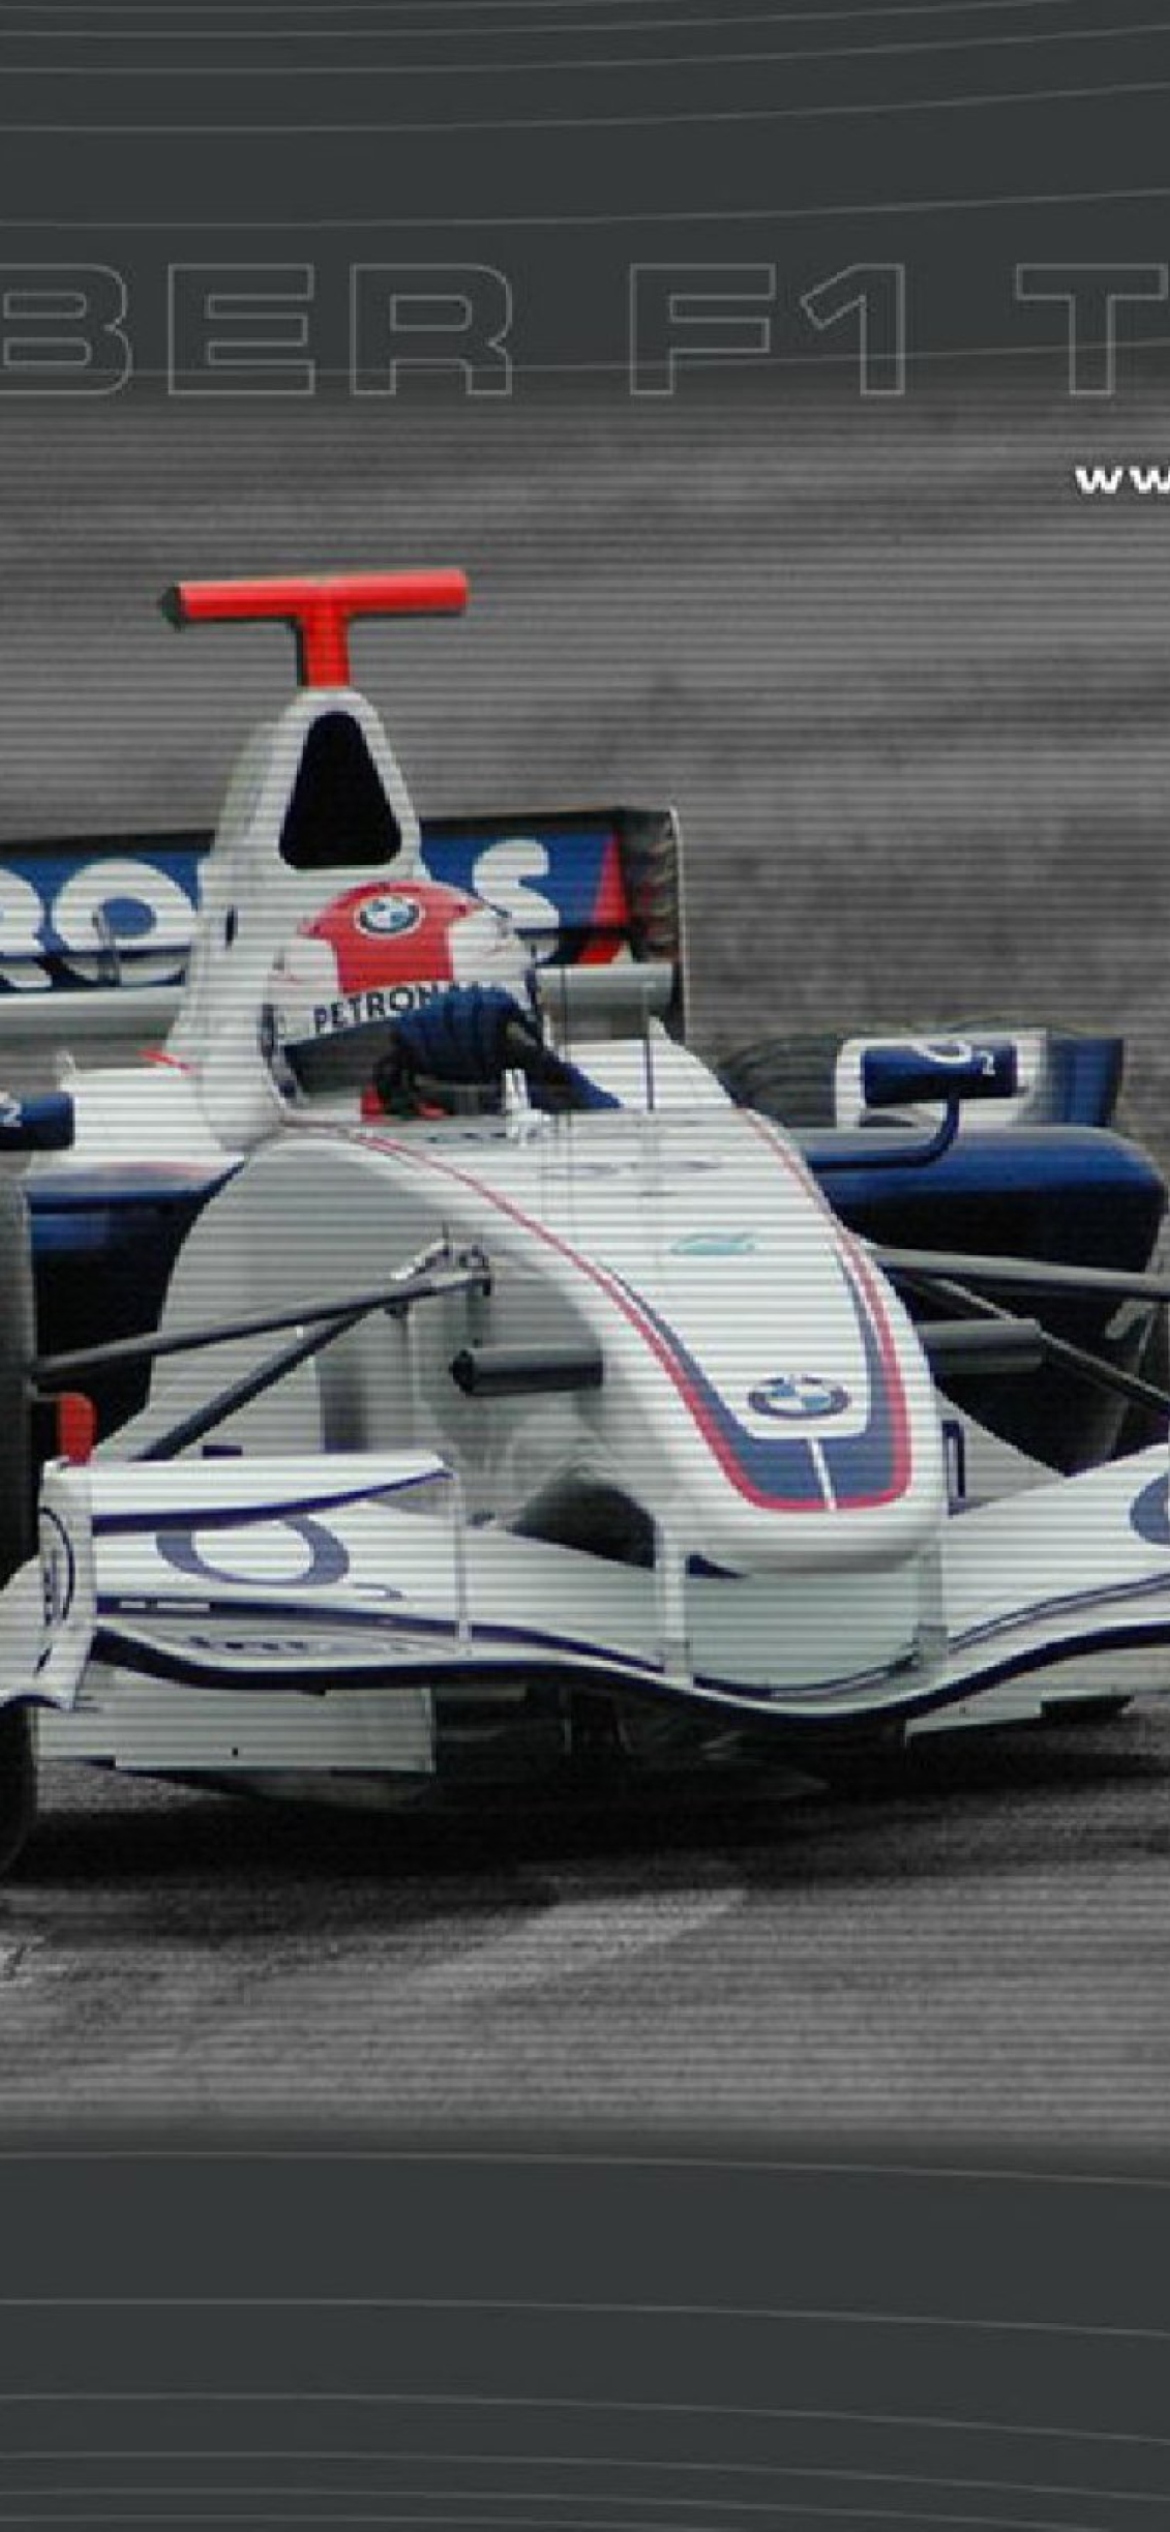 Robert Kubica - Formula1 wallpaper 1170x2532